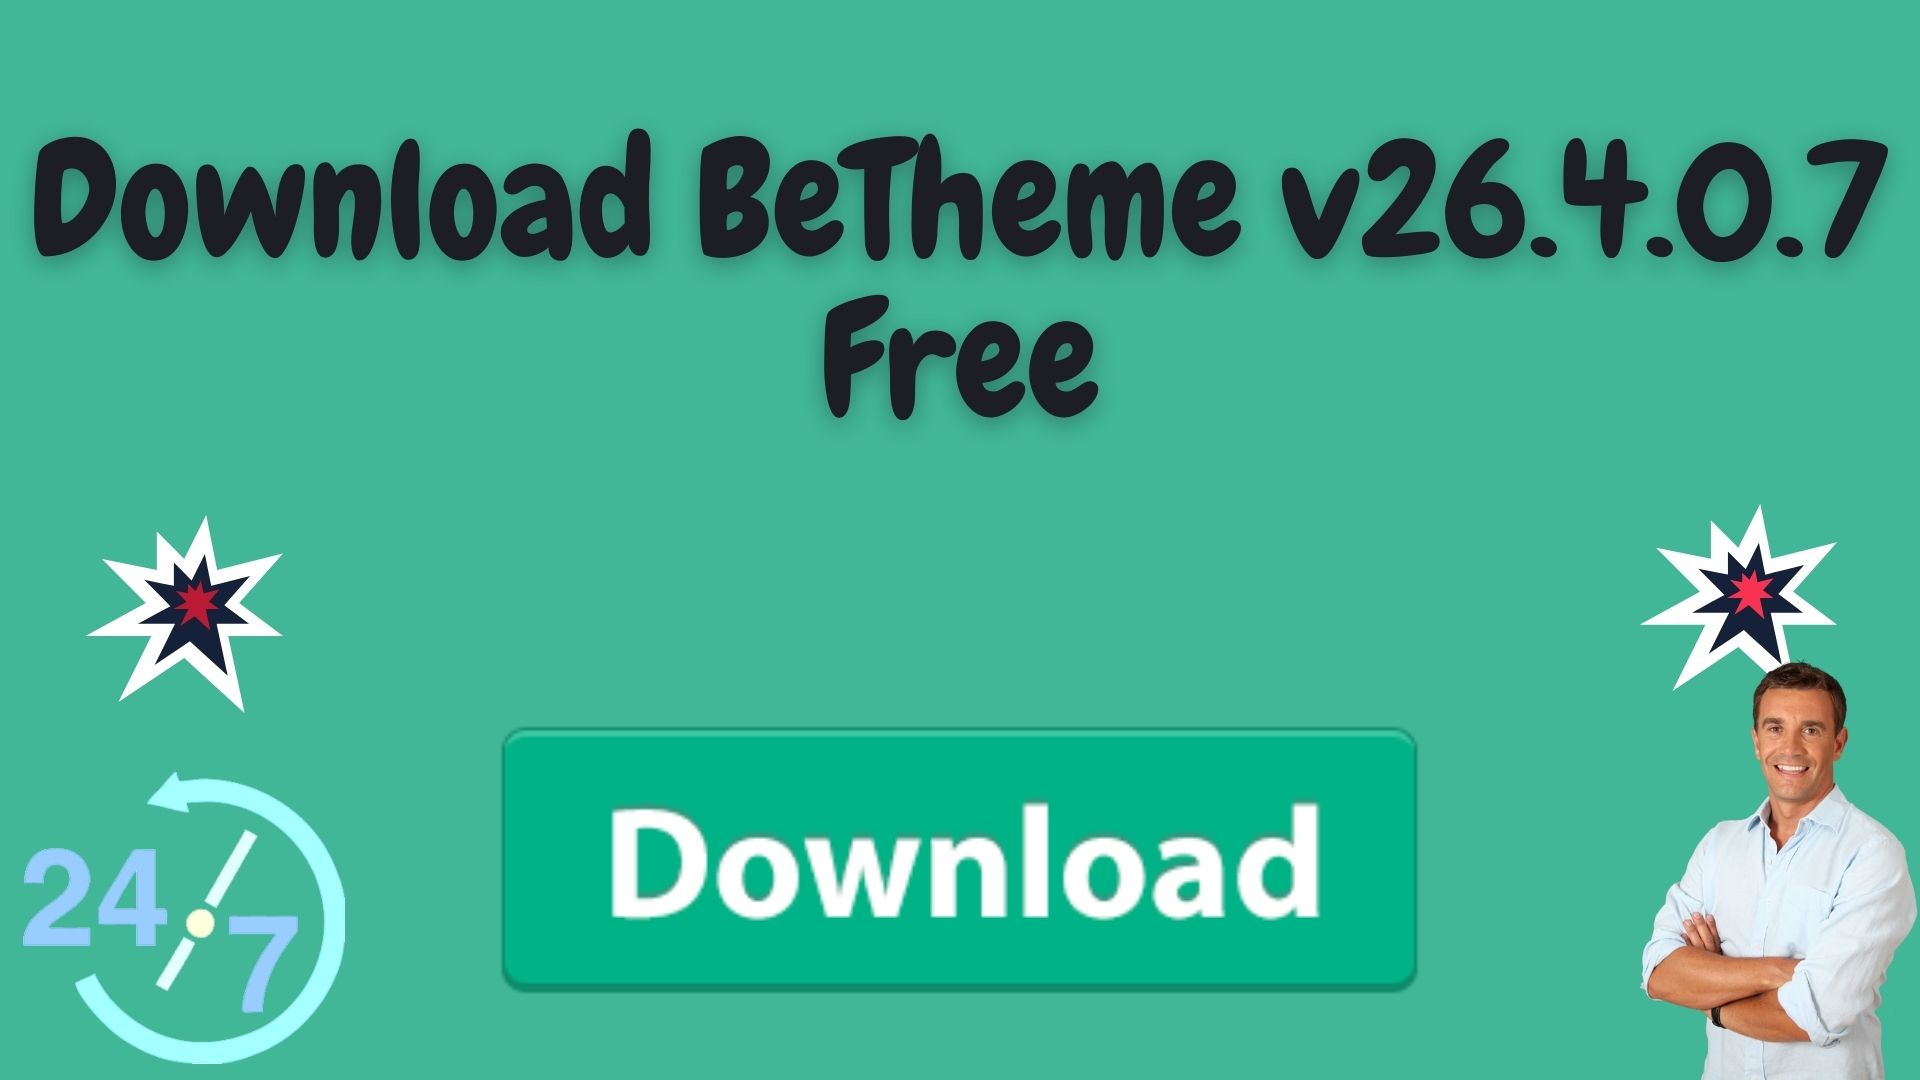 Download Betheme V26.4.0.7 Free